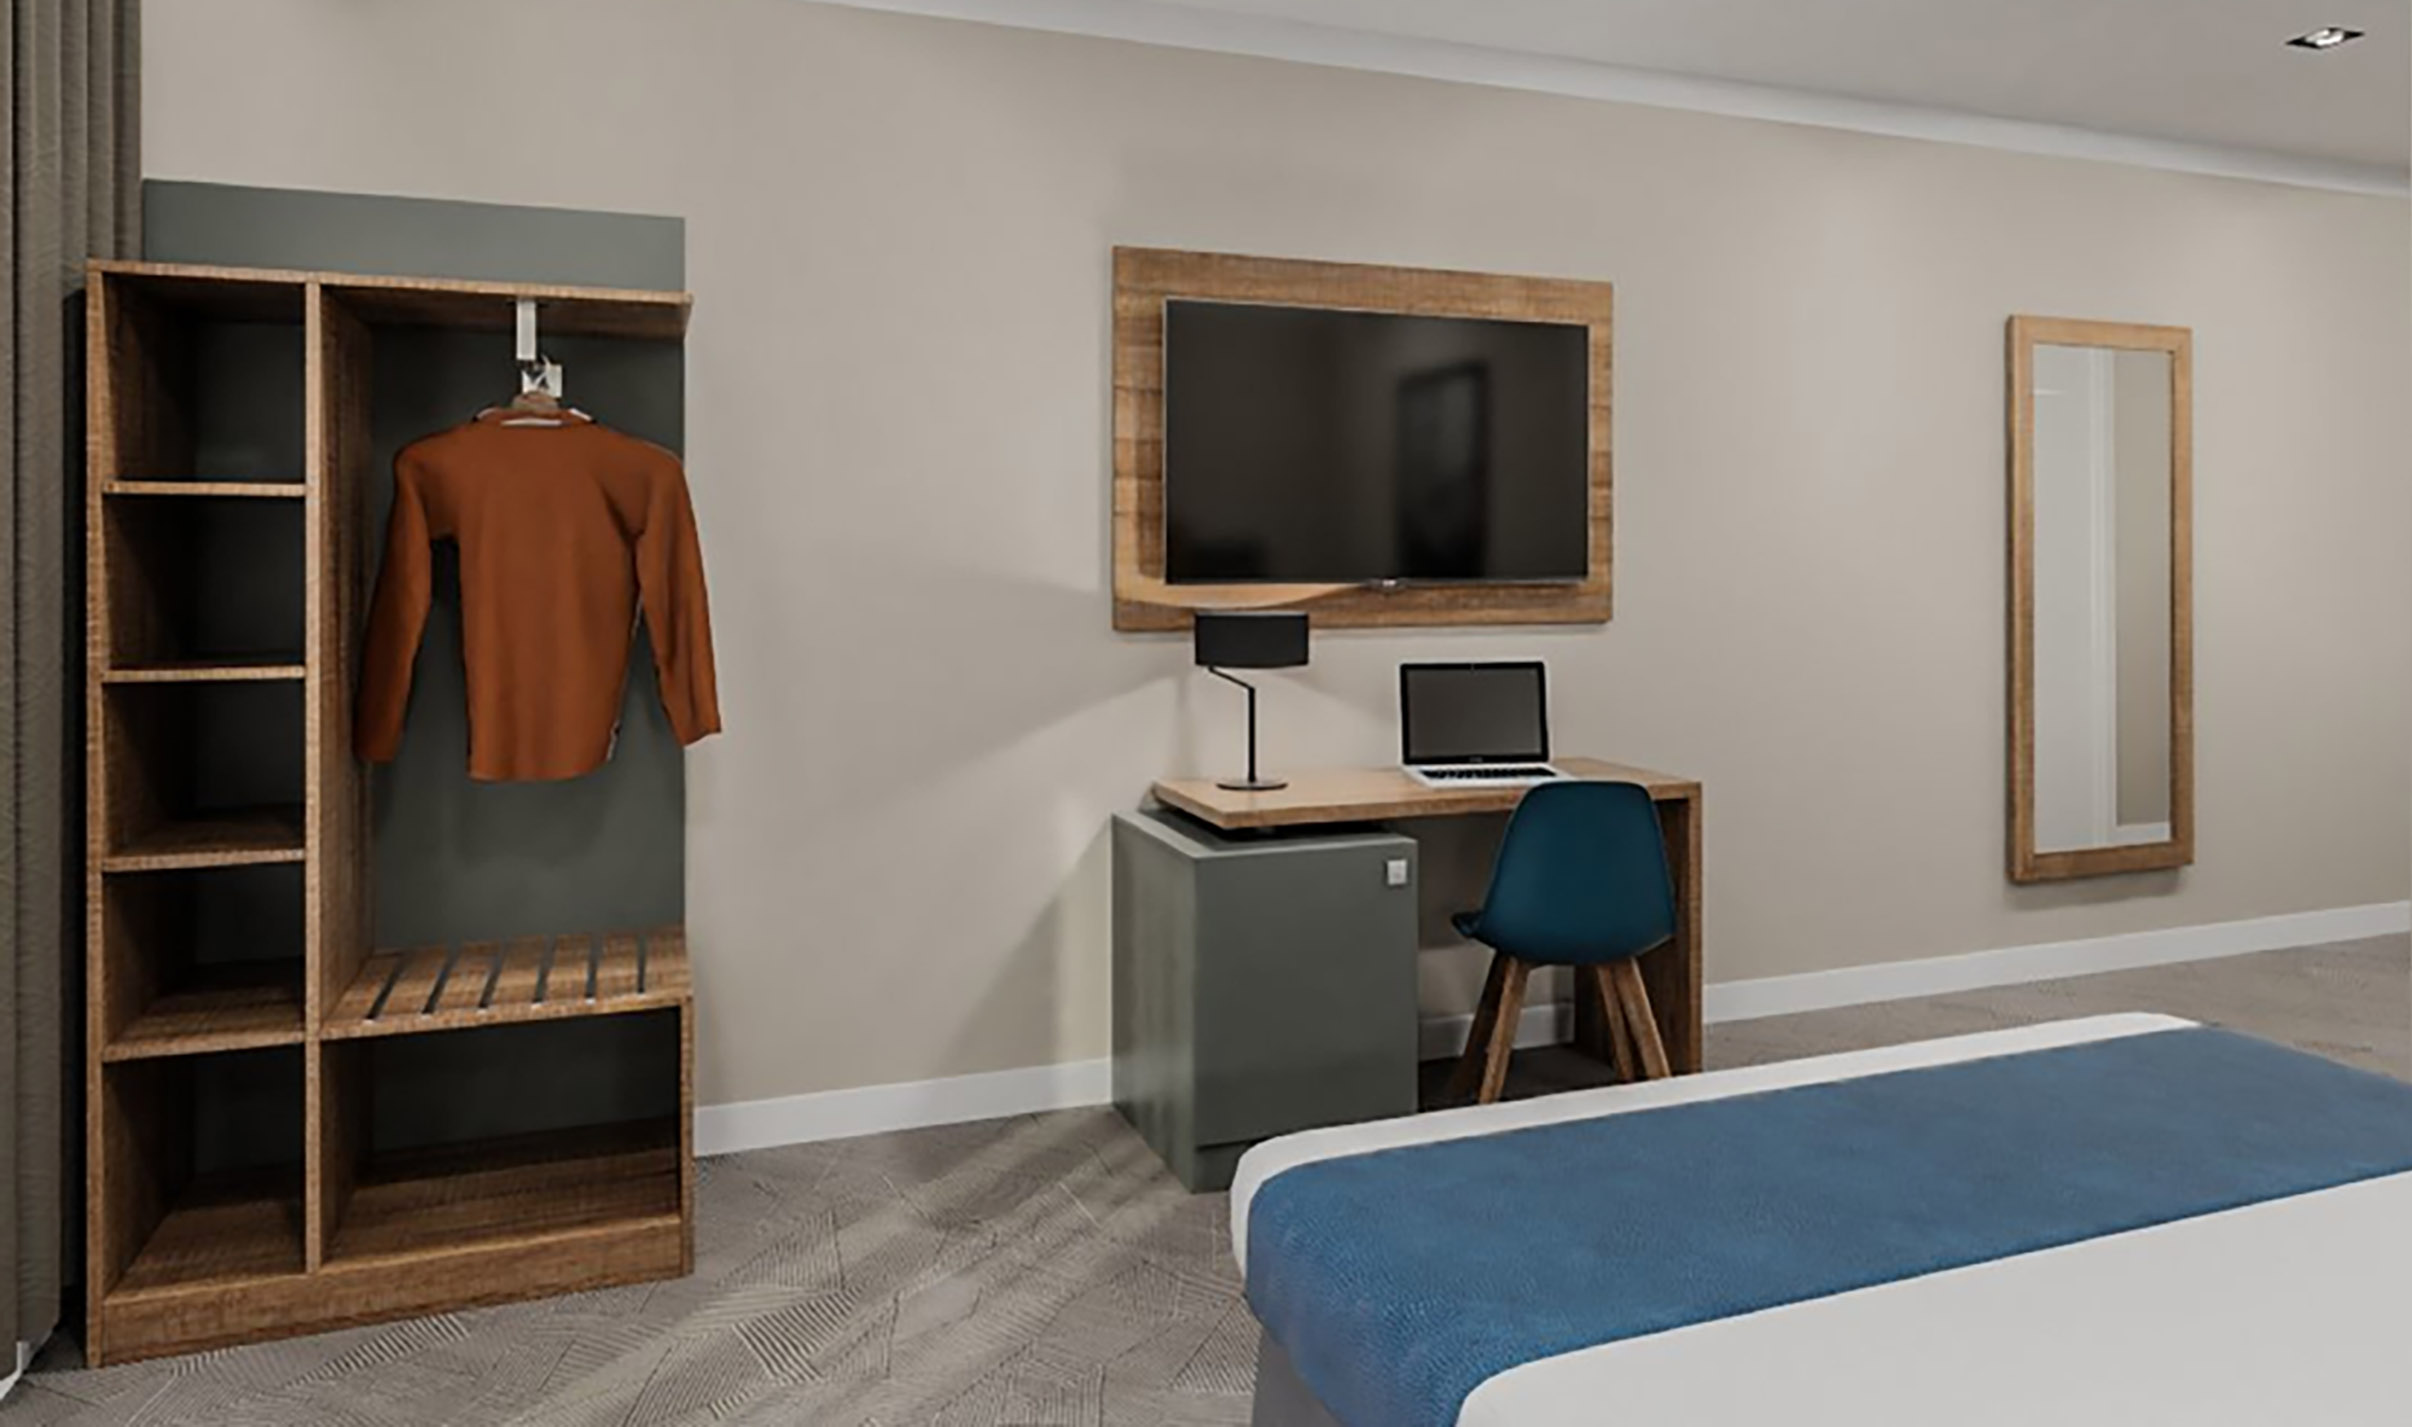 Bureau avec caisson chambre d'hôtel avec chaise, penderie et panneau TV